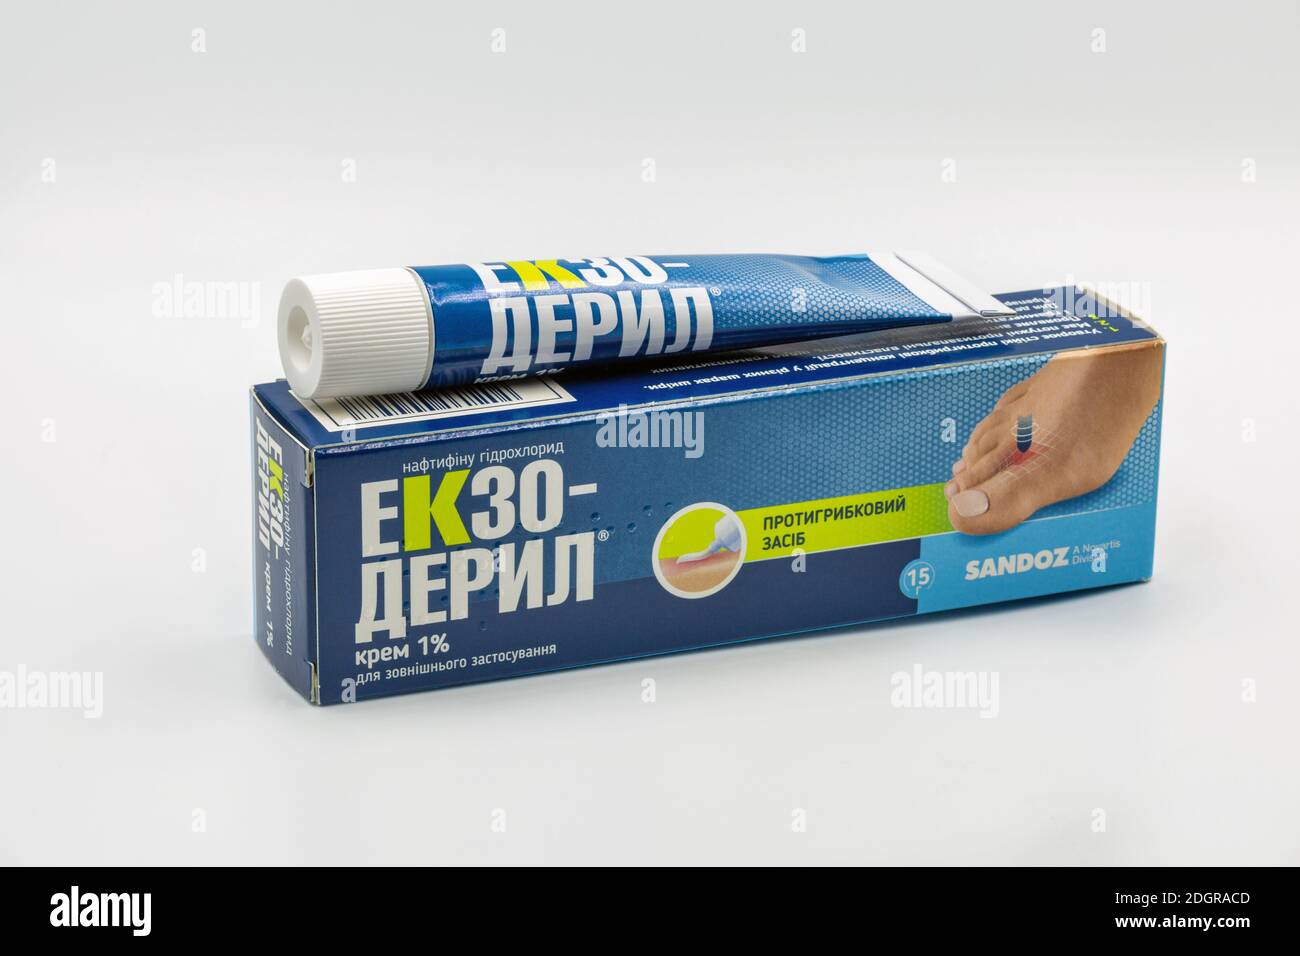 KIEV, UCRANIA - 14 DE NOVIEMBRE de 2020: Exo-deryl amorolfin crema de droga por Sandoz Novartis para el tratamiento de la micosis primer plano contra el blanco. Foto de stock